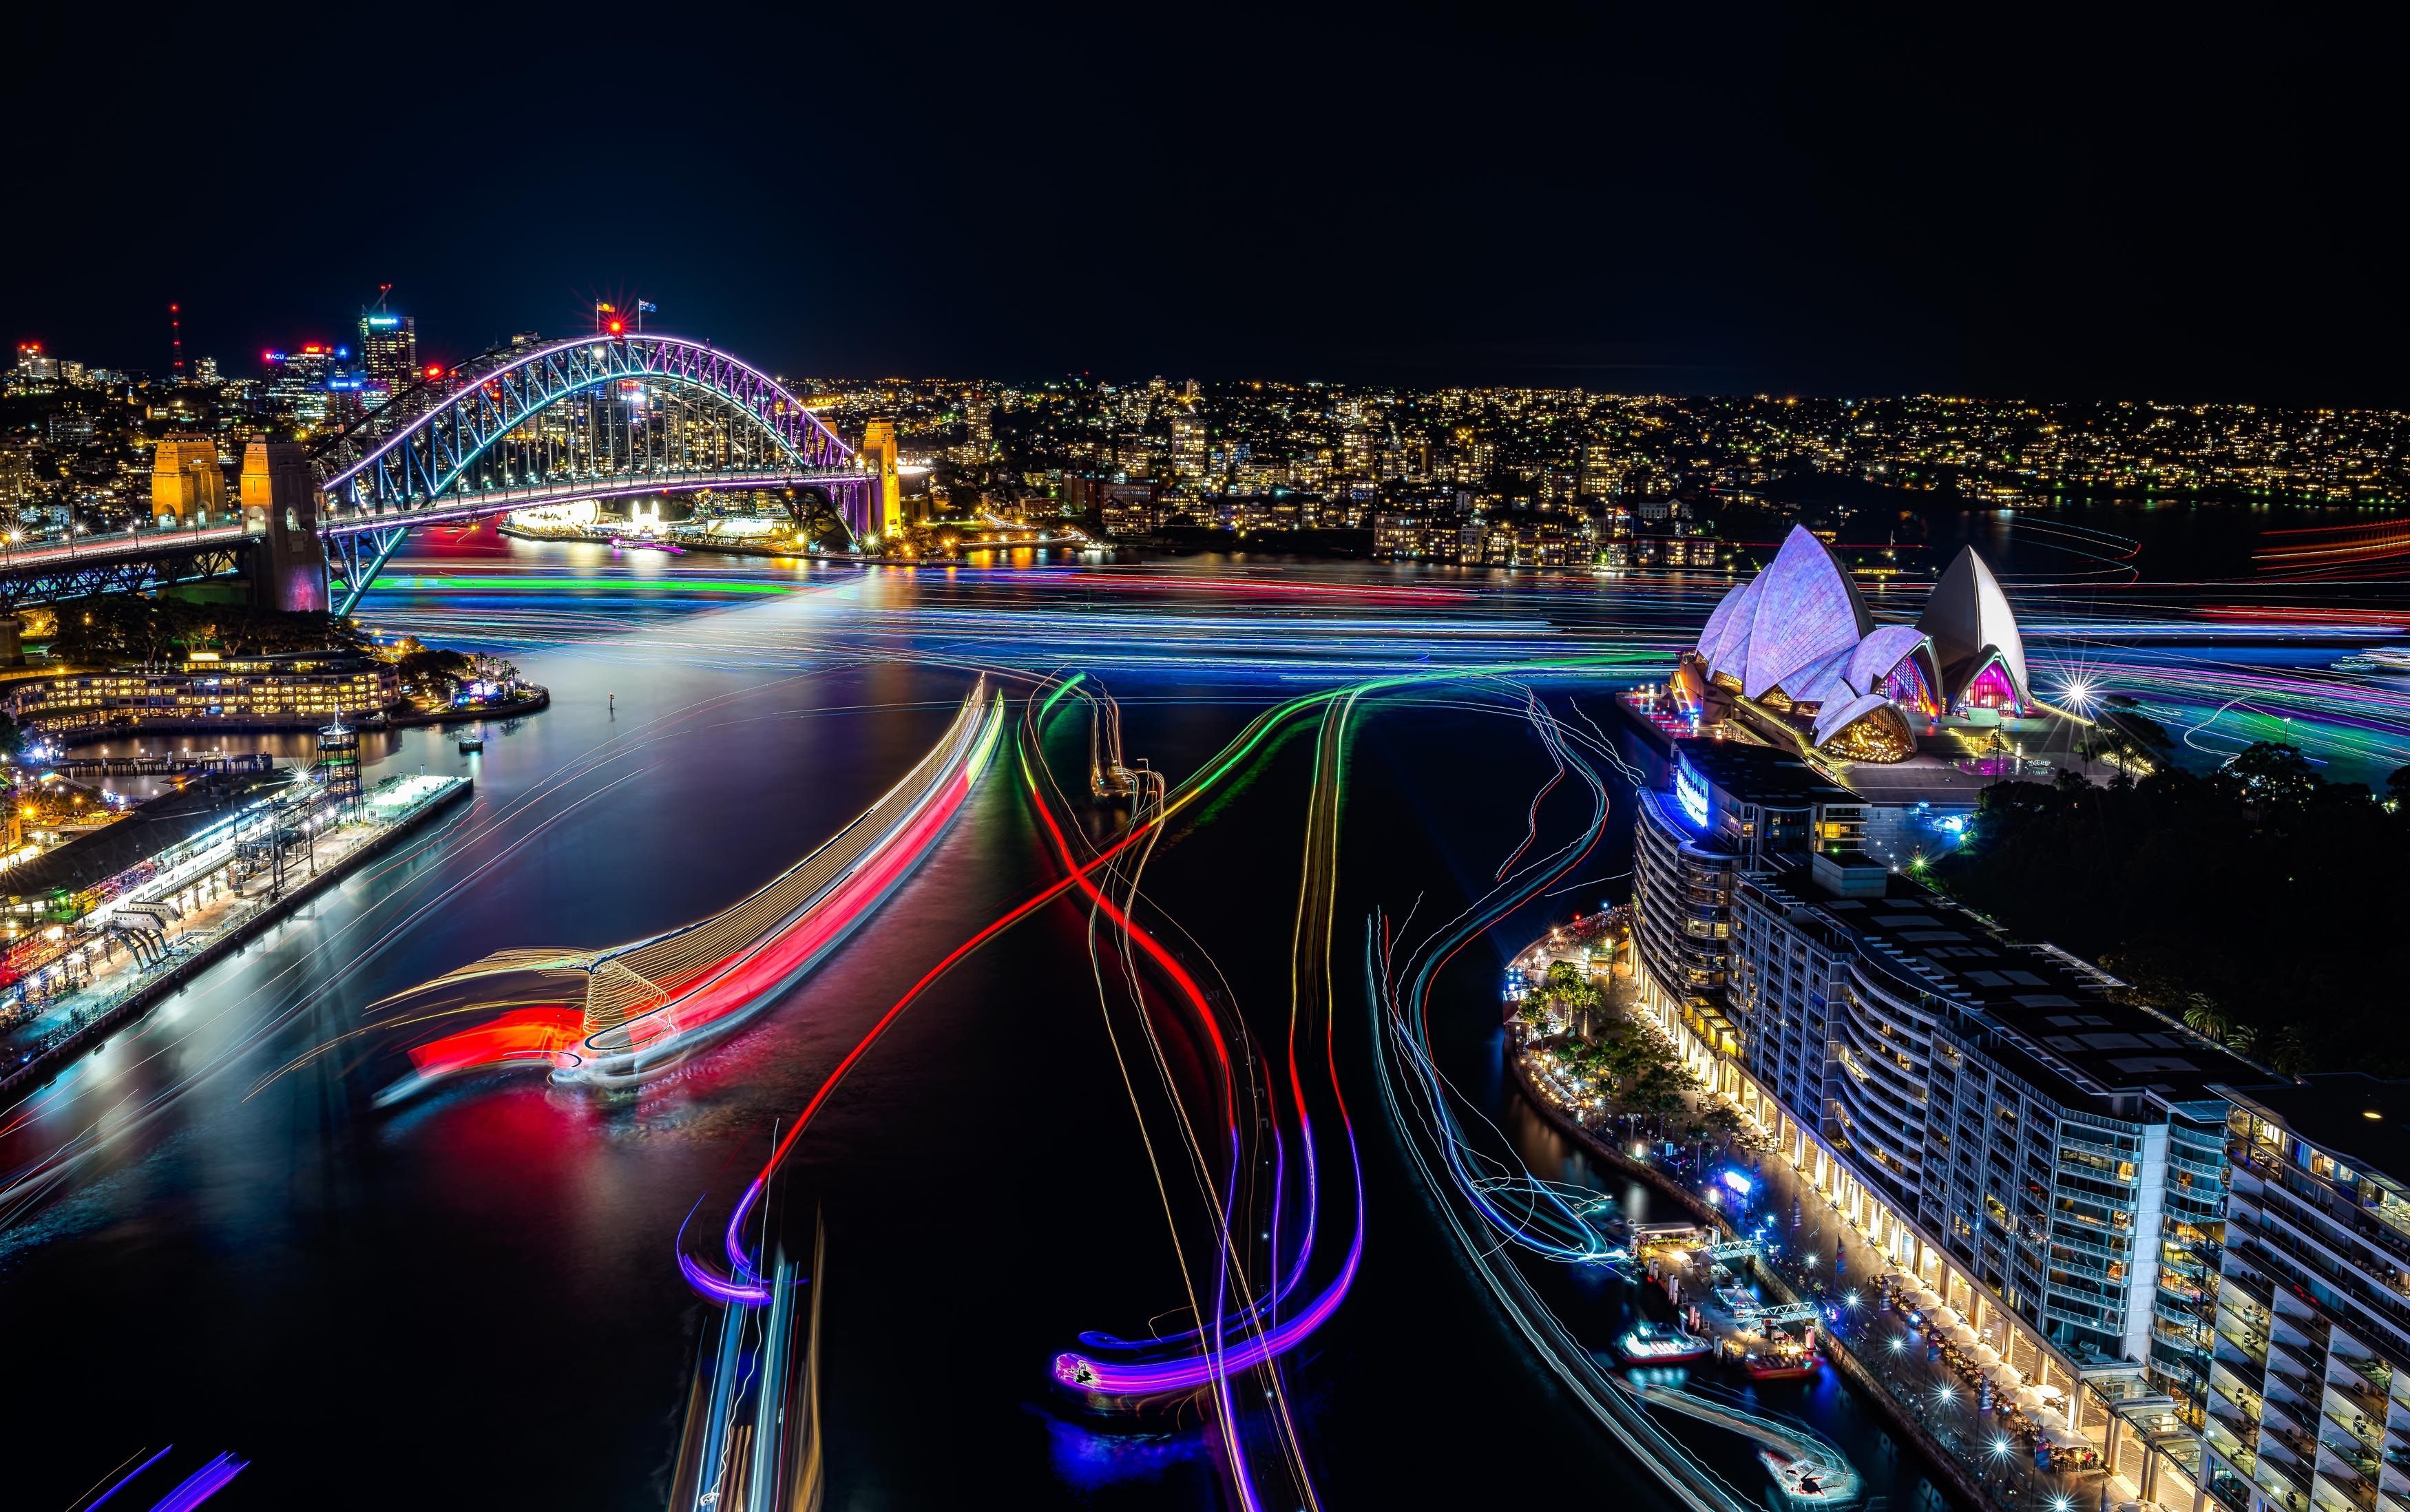 Hình nền Sydney rực rỡ: Bạn muốn khám phá vẻ đẹp của thành phố Sydney vào đêm? Với những hình nền Sydney rực rỡ, bạn có thể tận hưởng những góc nhìn đẹp nhất của thành phố này ngay trên màn hình của mình. Hãy đưa mình vào không gian sống động của thành phố này và thỏa sức khám phá.